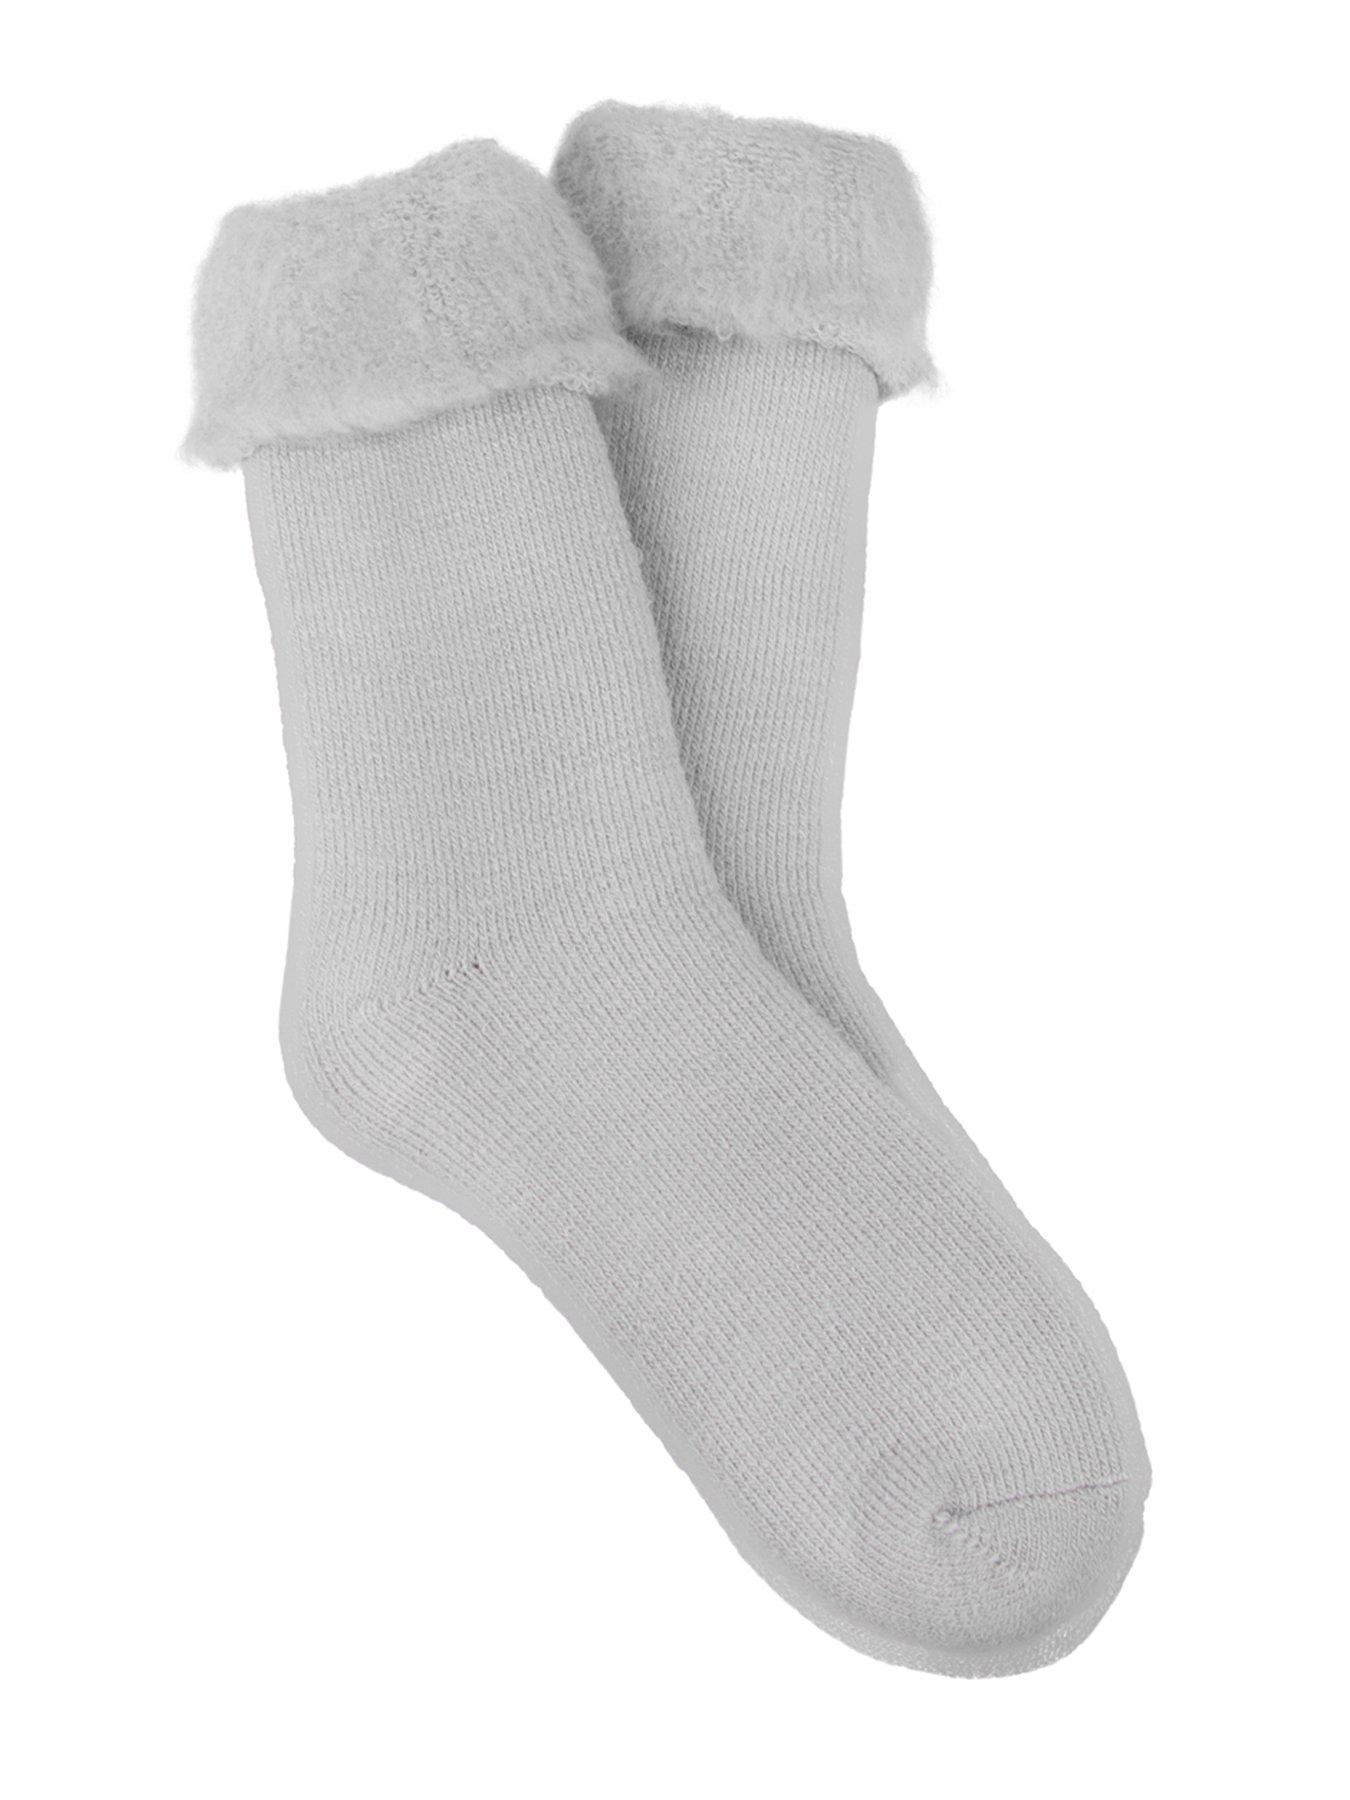  Snoozies Skinnies Slipper Socks Cozy, Foldable Slippers For  Women, Non Slip Socks For Travel & Indoors